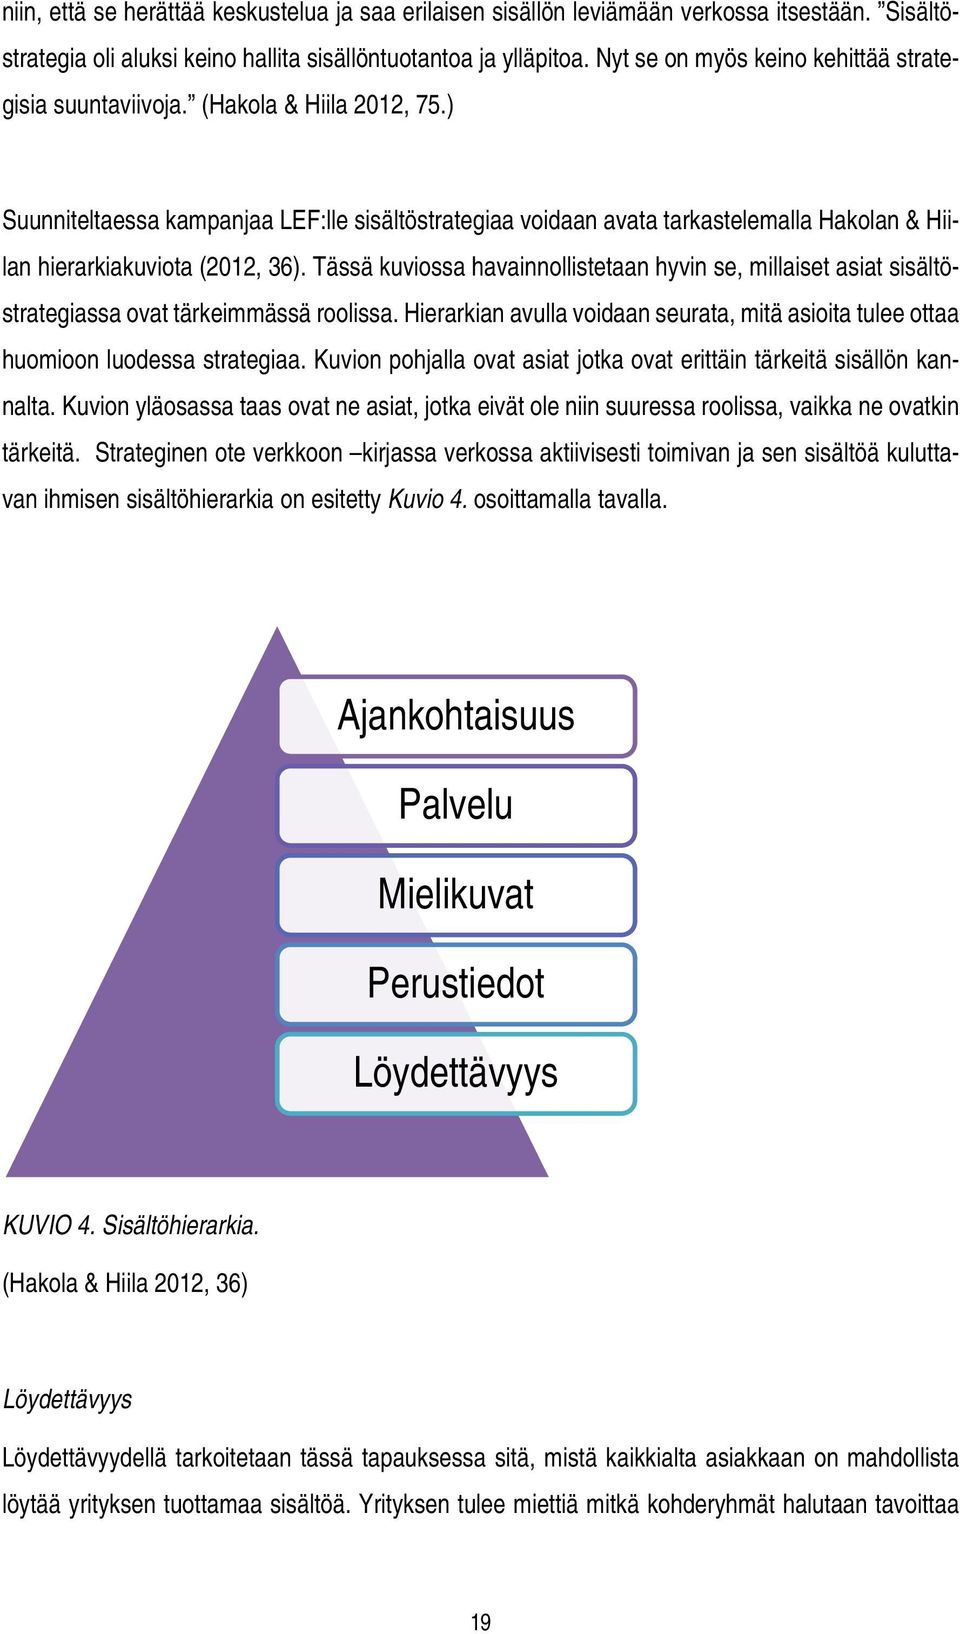 ) Suunniteltaessa kampanjaa LEF:lle sisältöstrategiaa voidaan avata tarkastelemalla Hakolan & Hiilan hierarkiakuviota (2012, 36).